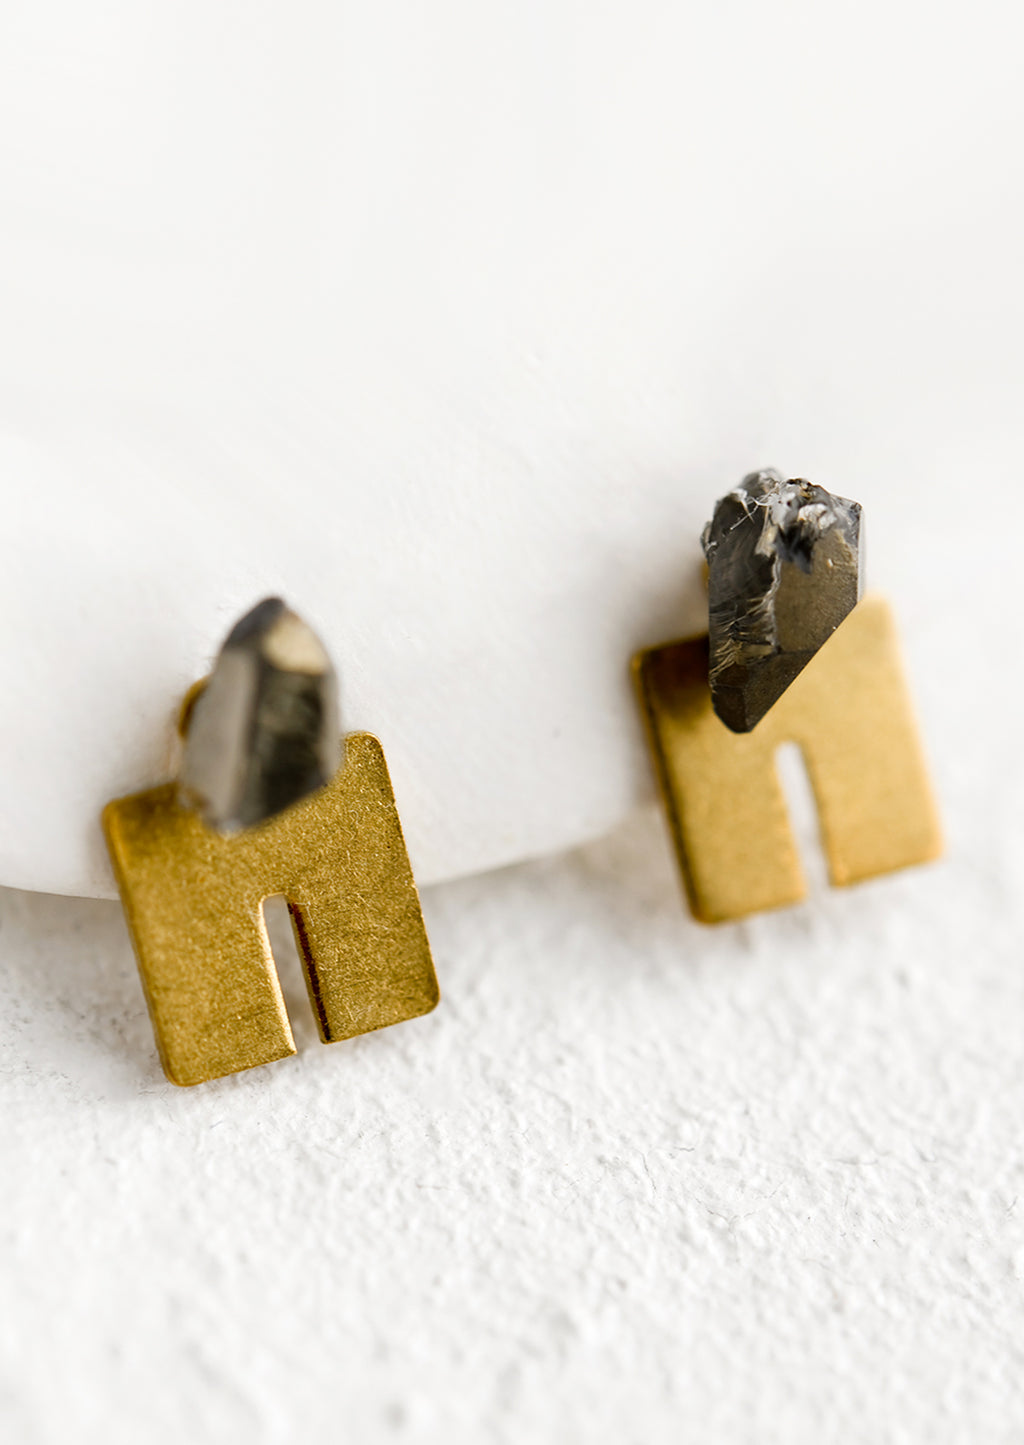 Smoky Quartz: A pair of squared U shaped brass studs with smoky quartz gemstone post.